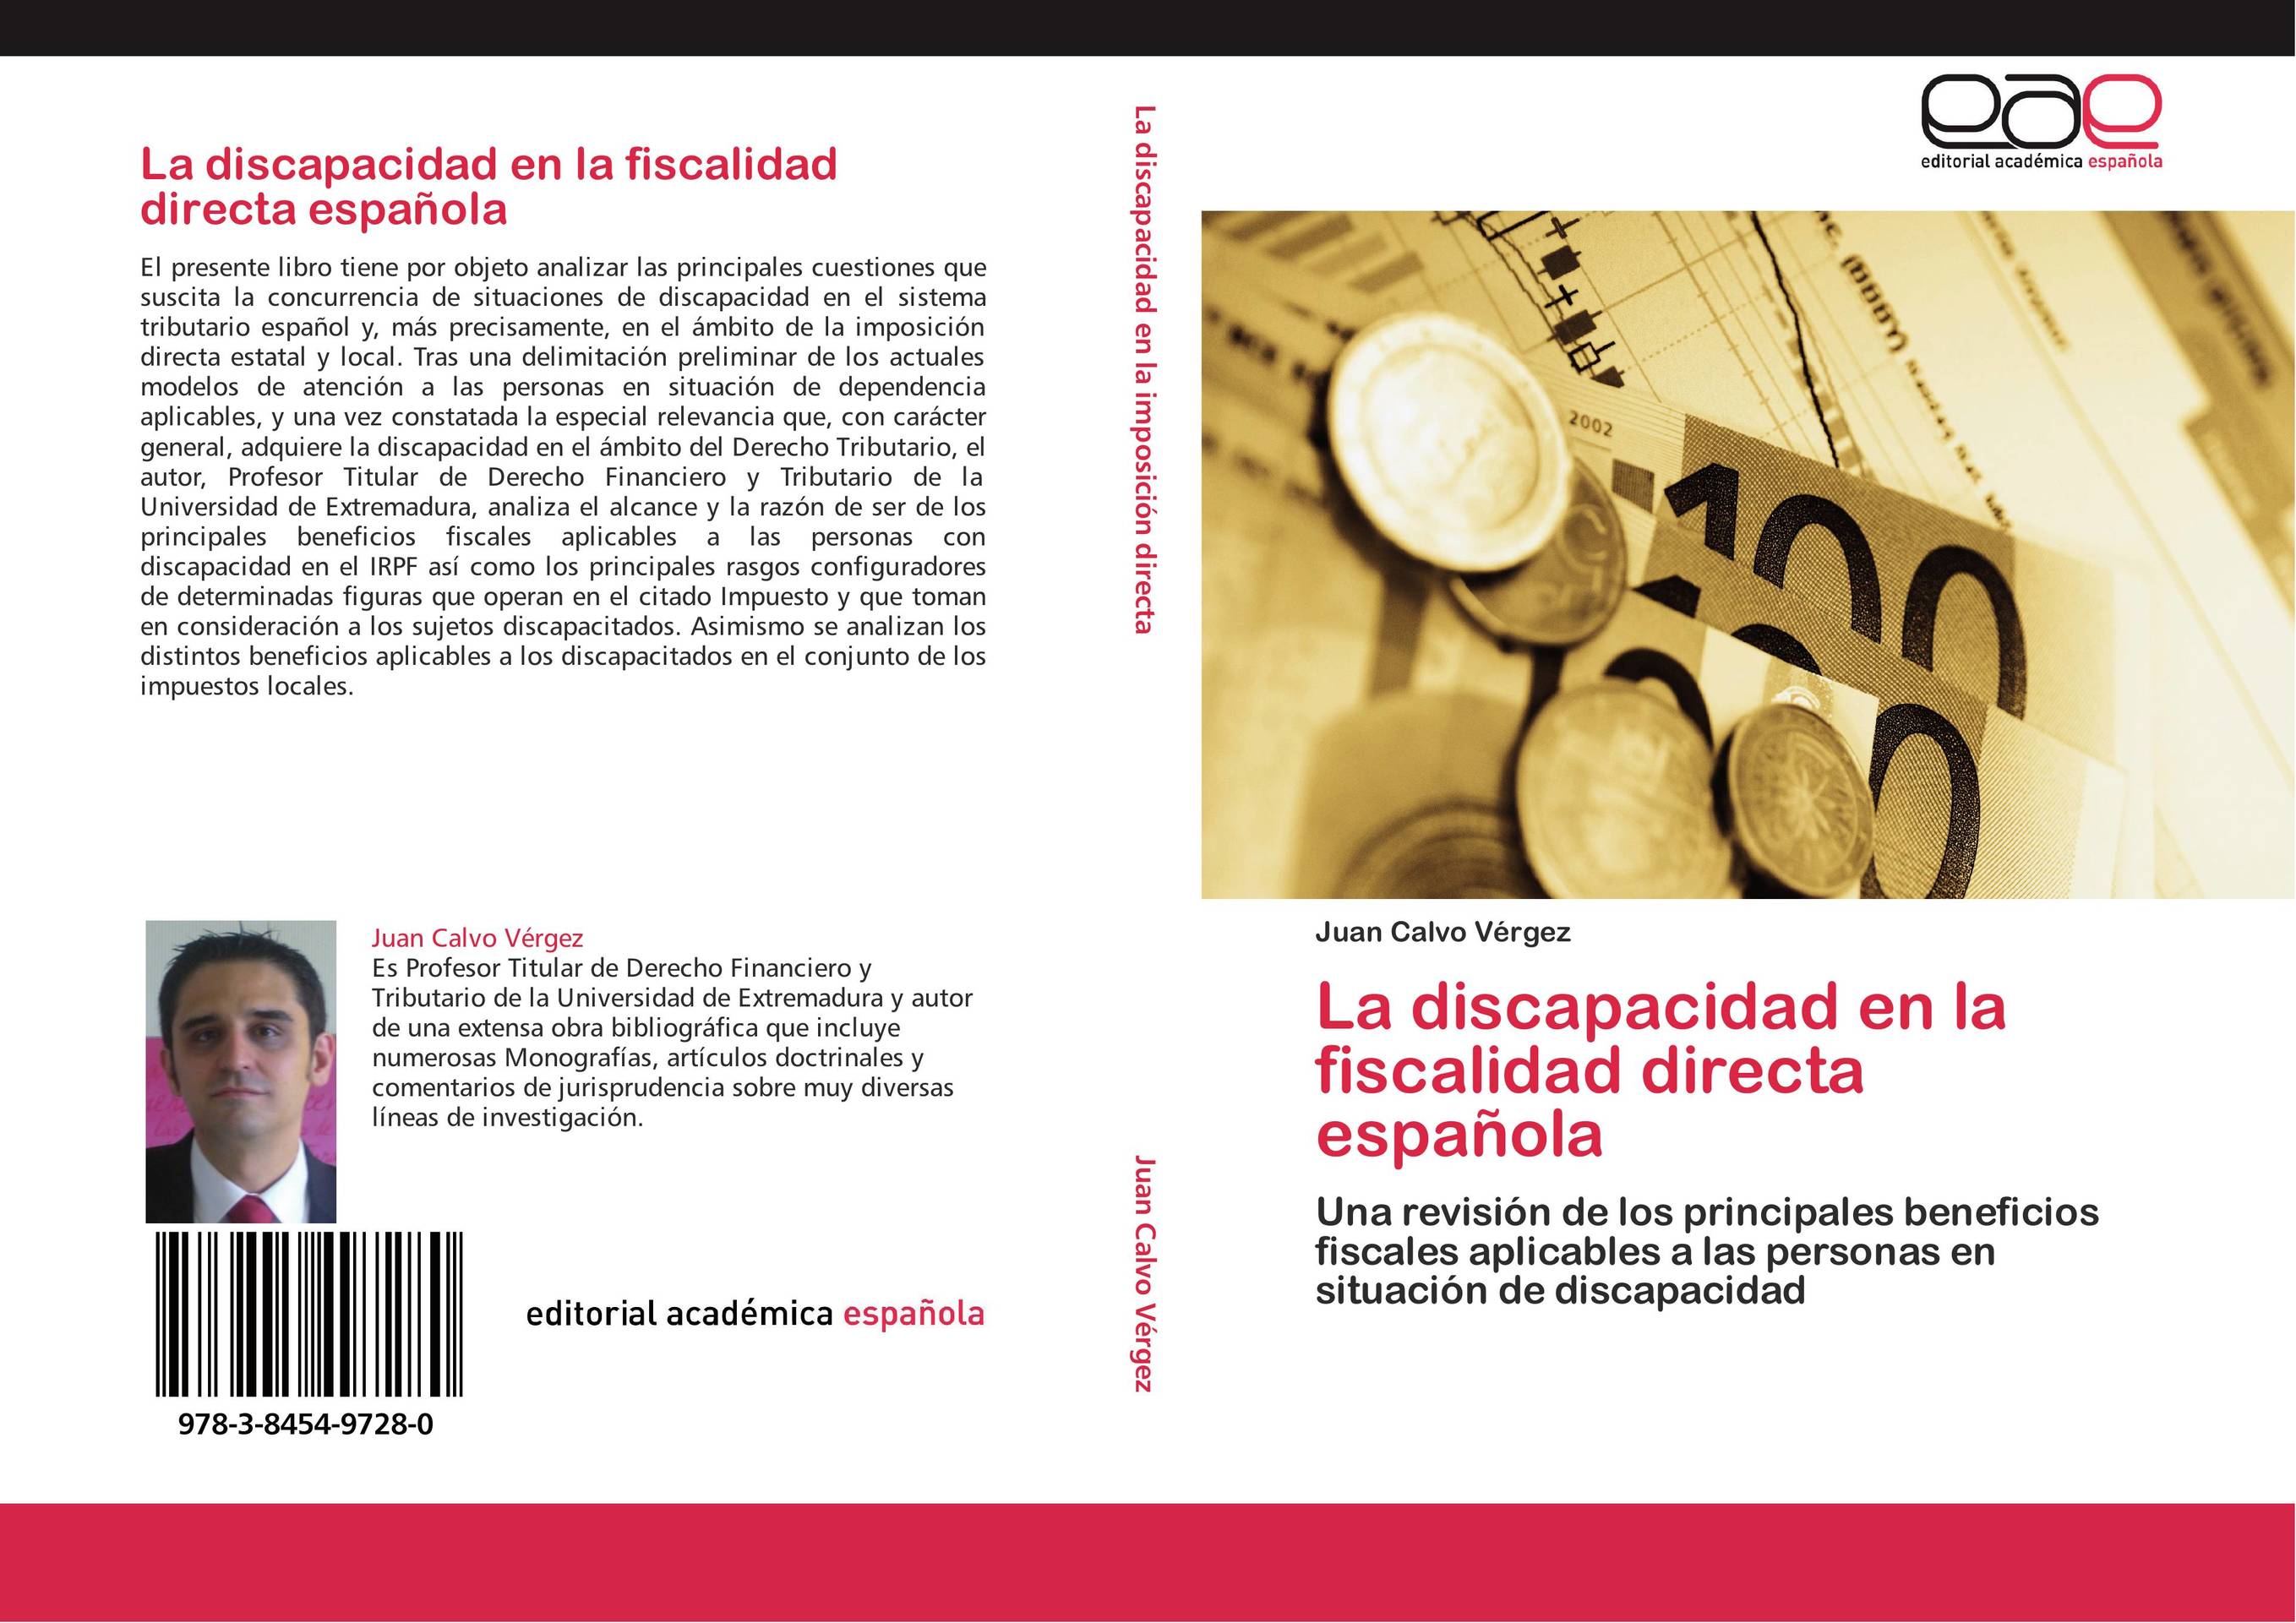 La discapacidad en la fiscalidad directa española